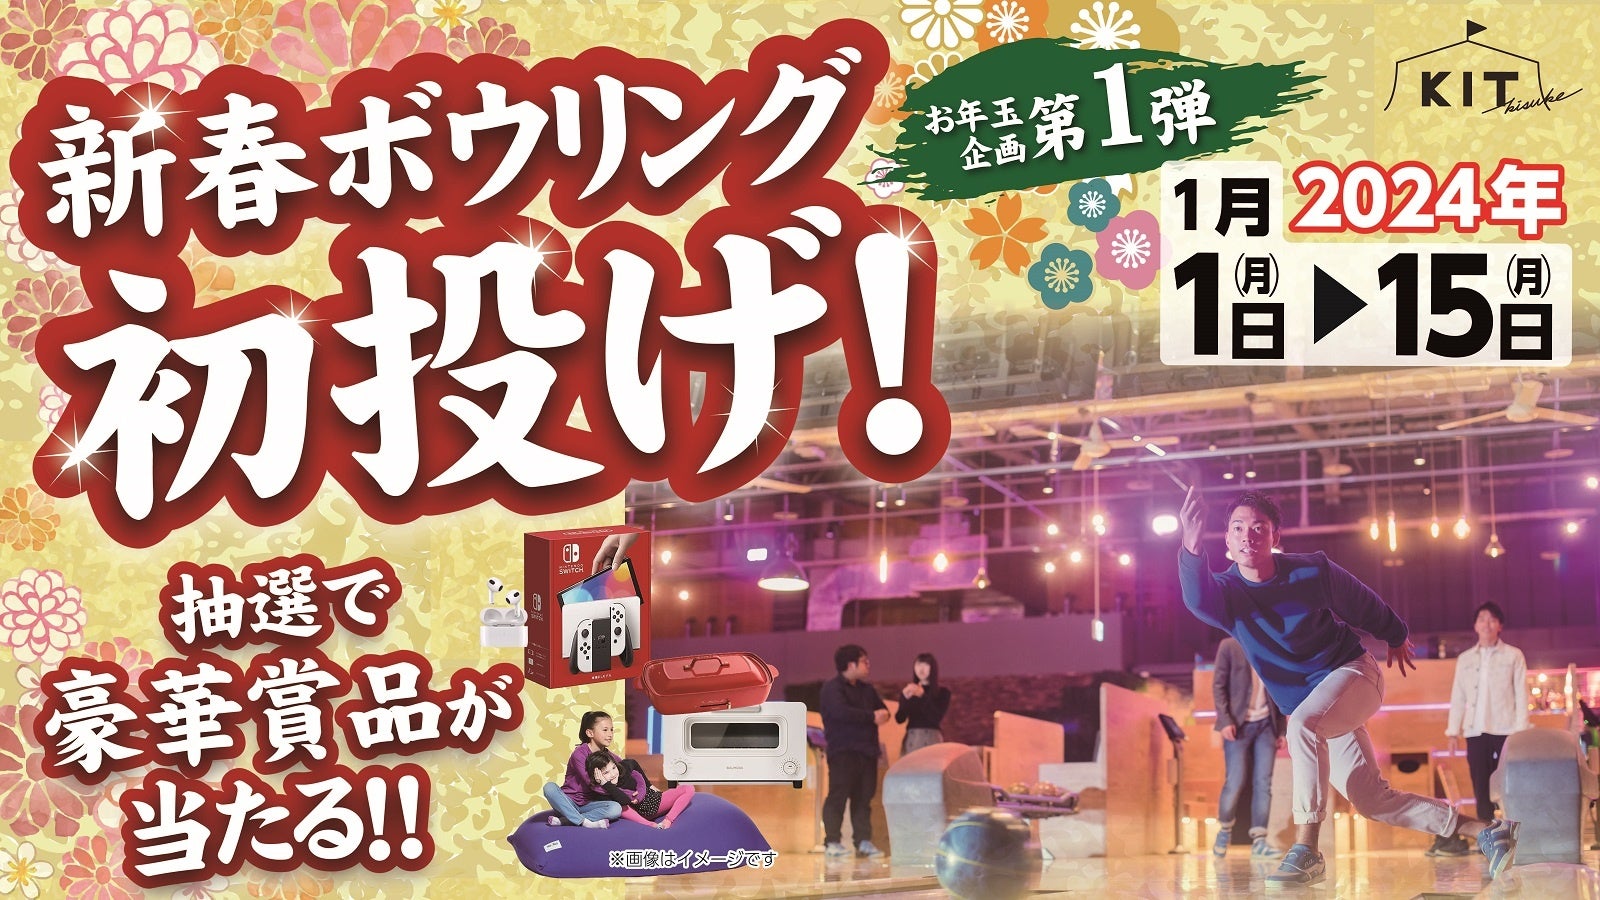 新年第一场比赛，全家人一起去四国最大的综合娱乐中心 Kisuke KIT 打保龄球吧！更有机会获得精美奖品以及关注转发活动！ [爱媛县松山市] | 喜助株式会社新闻稿